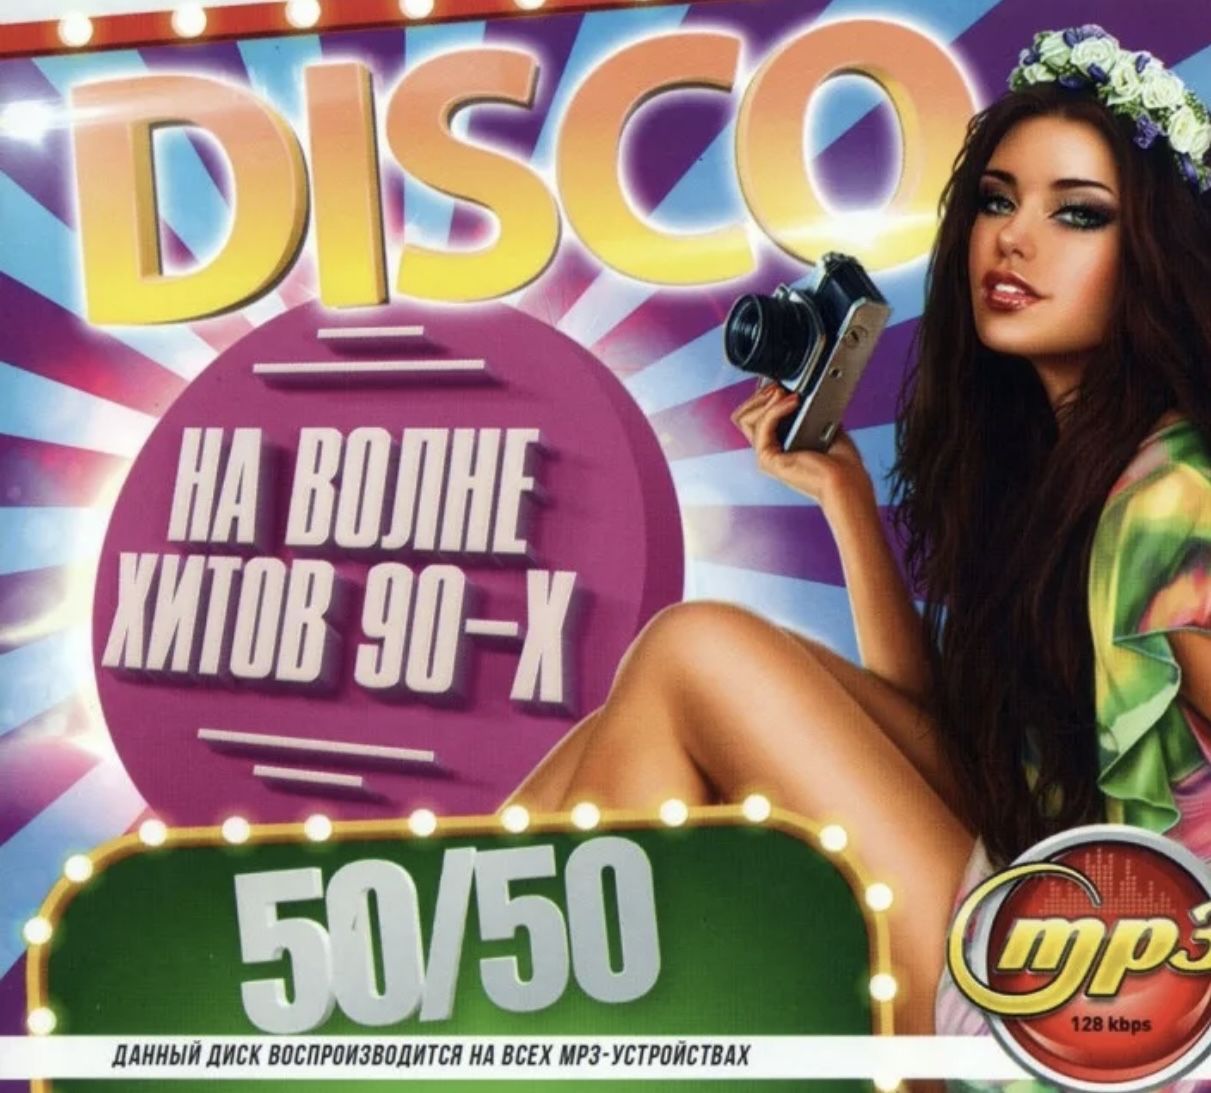 Сборник 80 русские слушать. Хиты 90-х. Музыкальный диск 90-х. Самые популярные музыкальные диски. Хиты 90-х и 00-х.